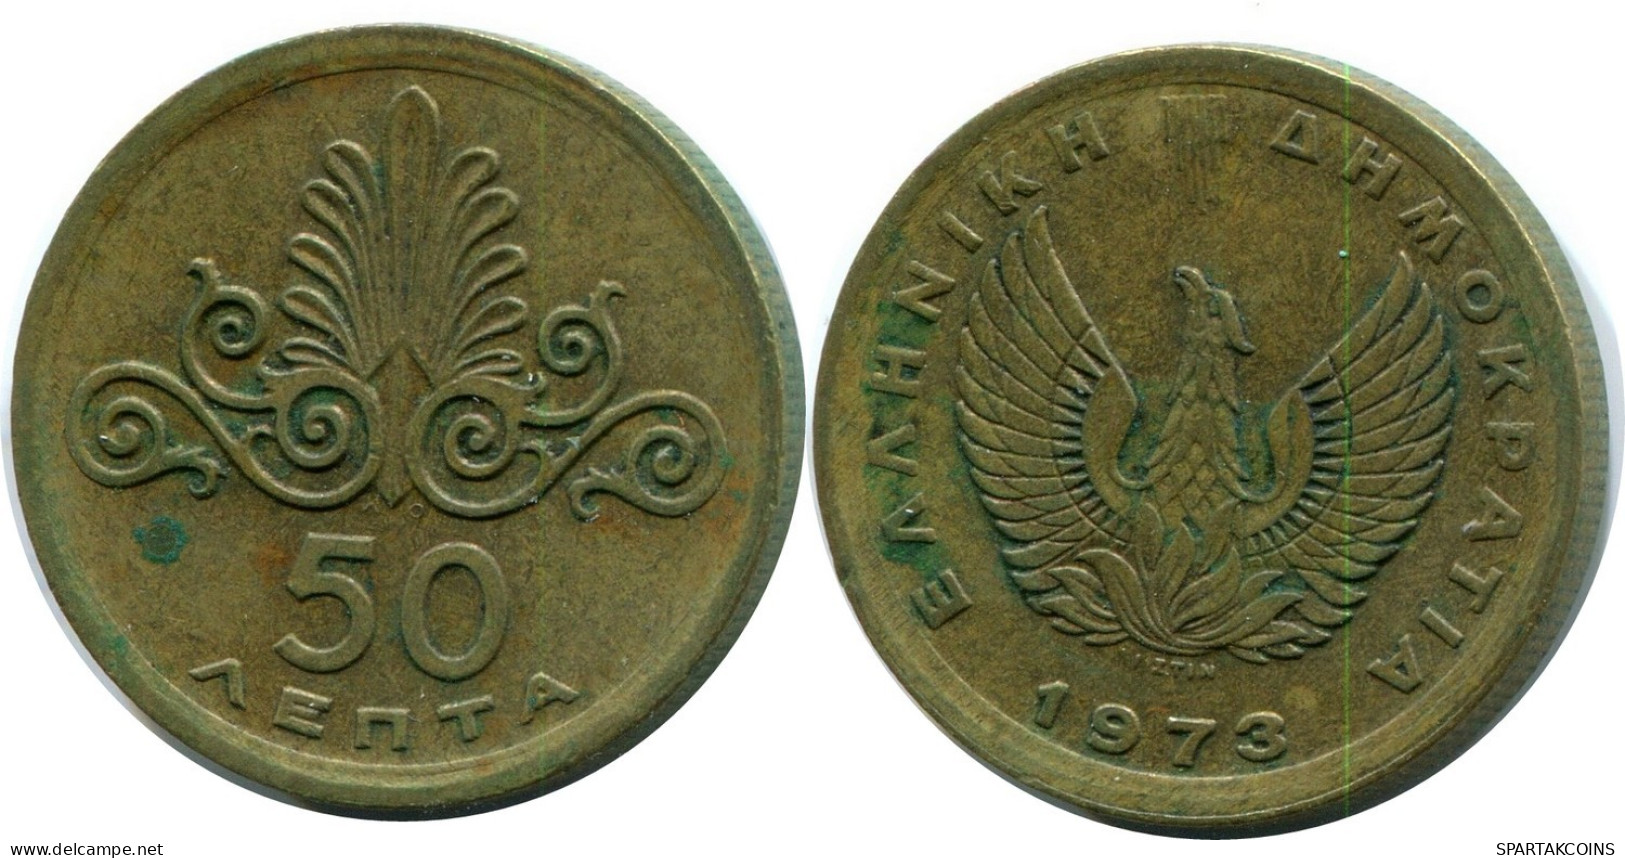 50 LEPTA 1973 GRECIA GREECE Moneda #AW707.E.A - Greece